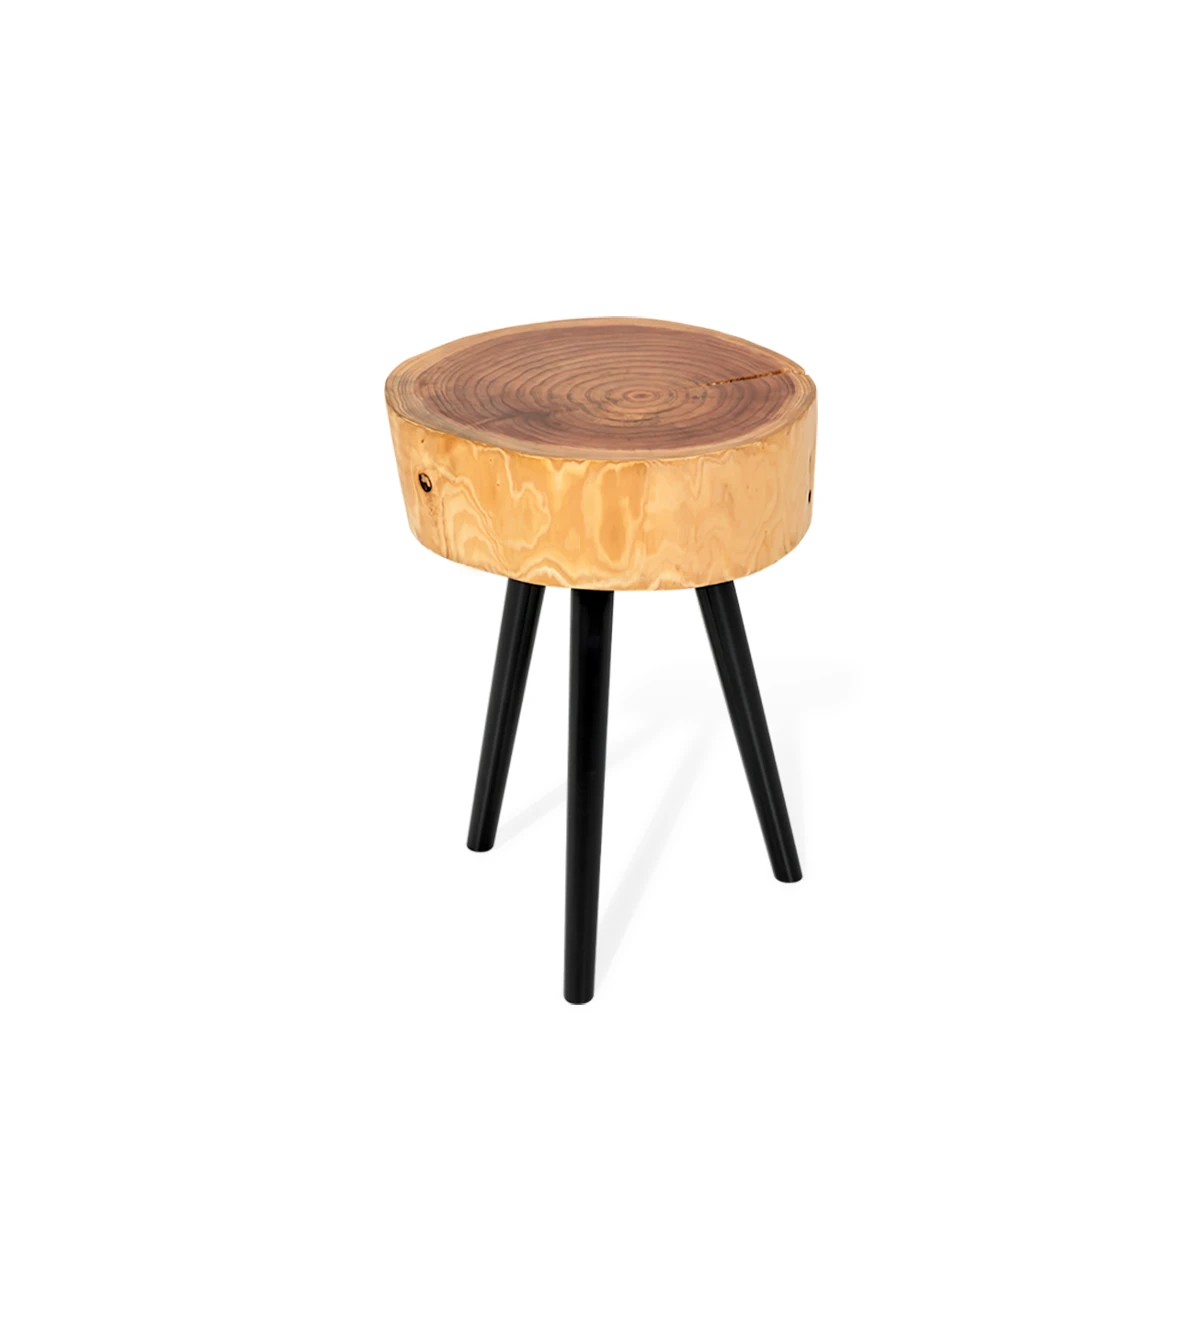 Mesa de apoio tronco em madeira natural de criptoméria, com 3 pés torneados lacados a negro.